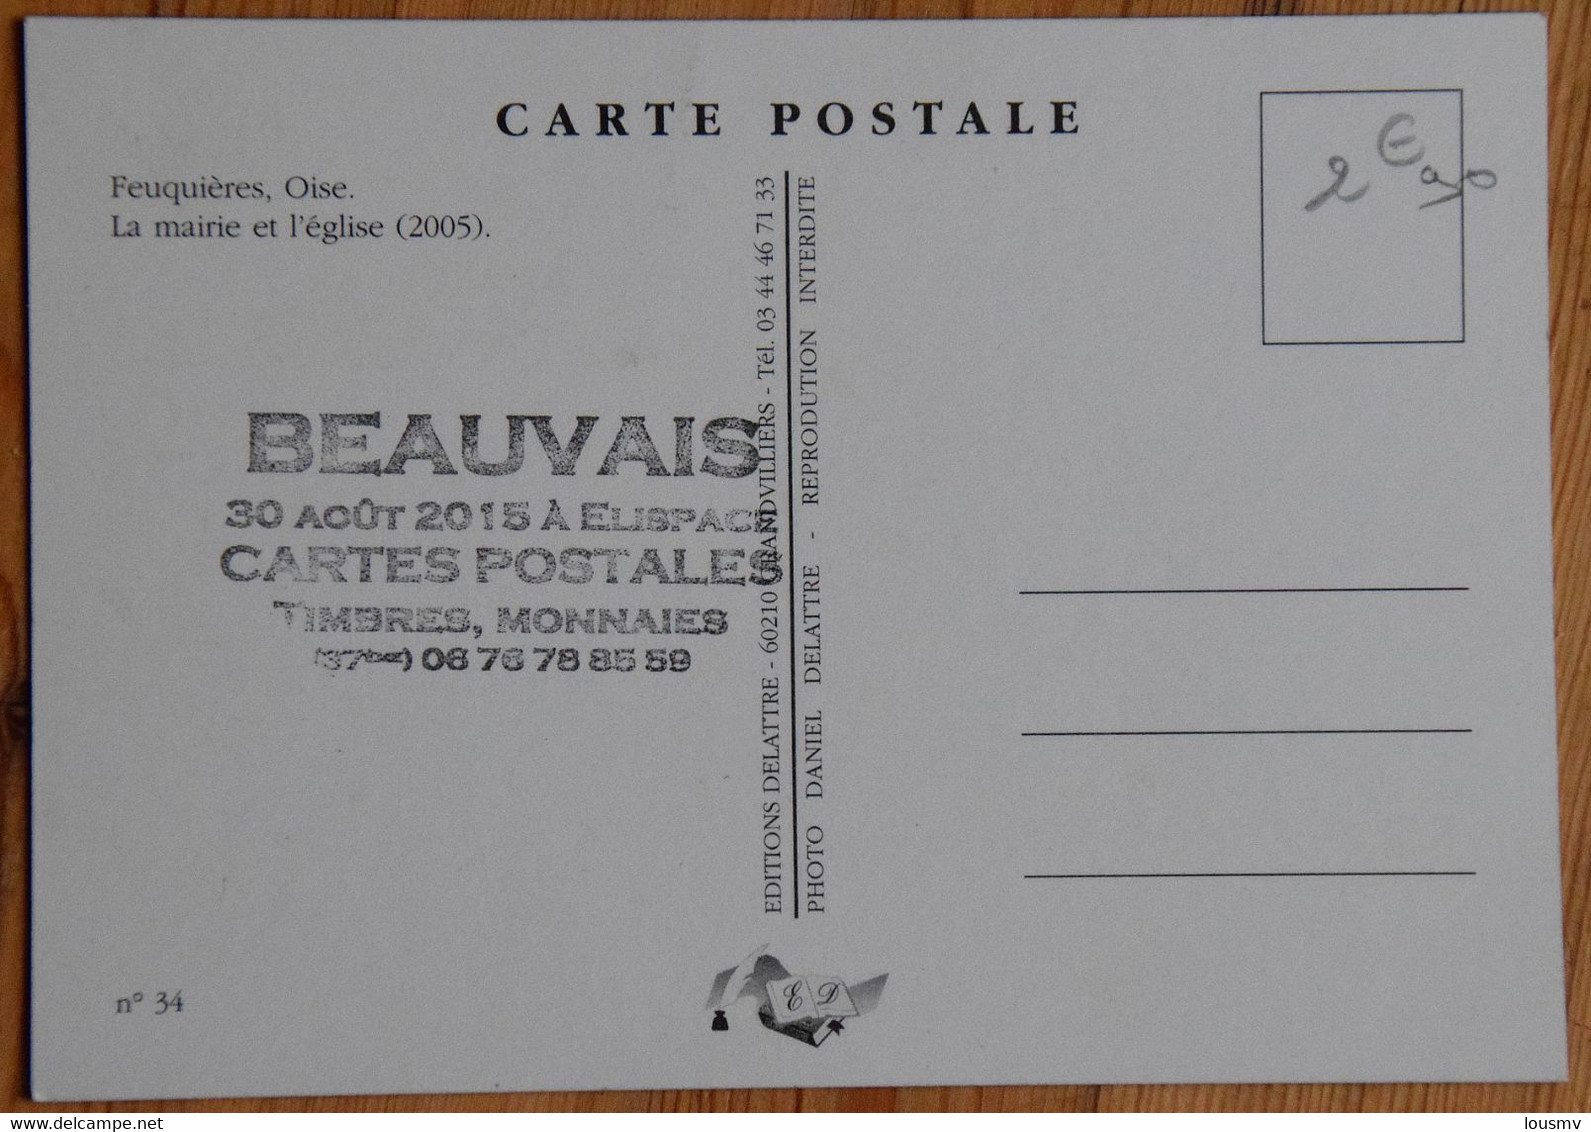 Feuquières - La Mairie Et L'Eglise (2005) - Cachet Exposition Cartes Postales Timbres Monnaies à Beauvais - (n°25520) - Bourses & Salons De Collections